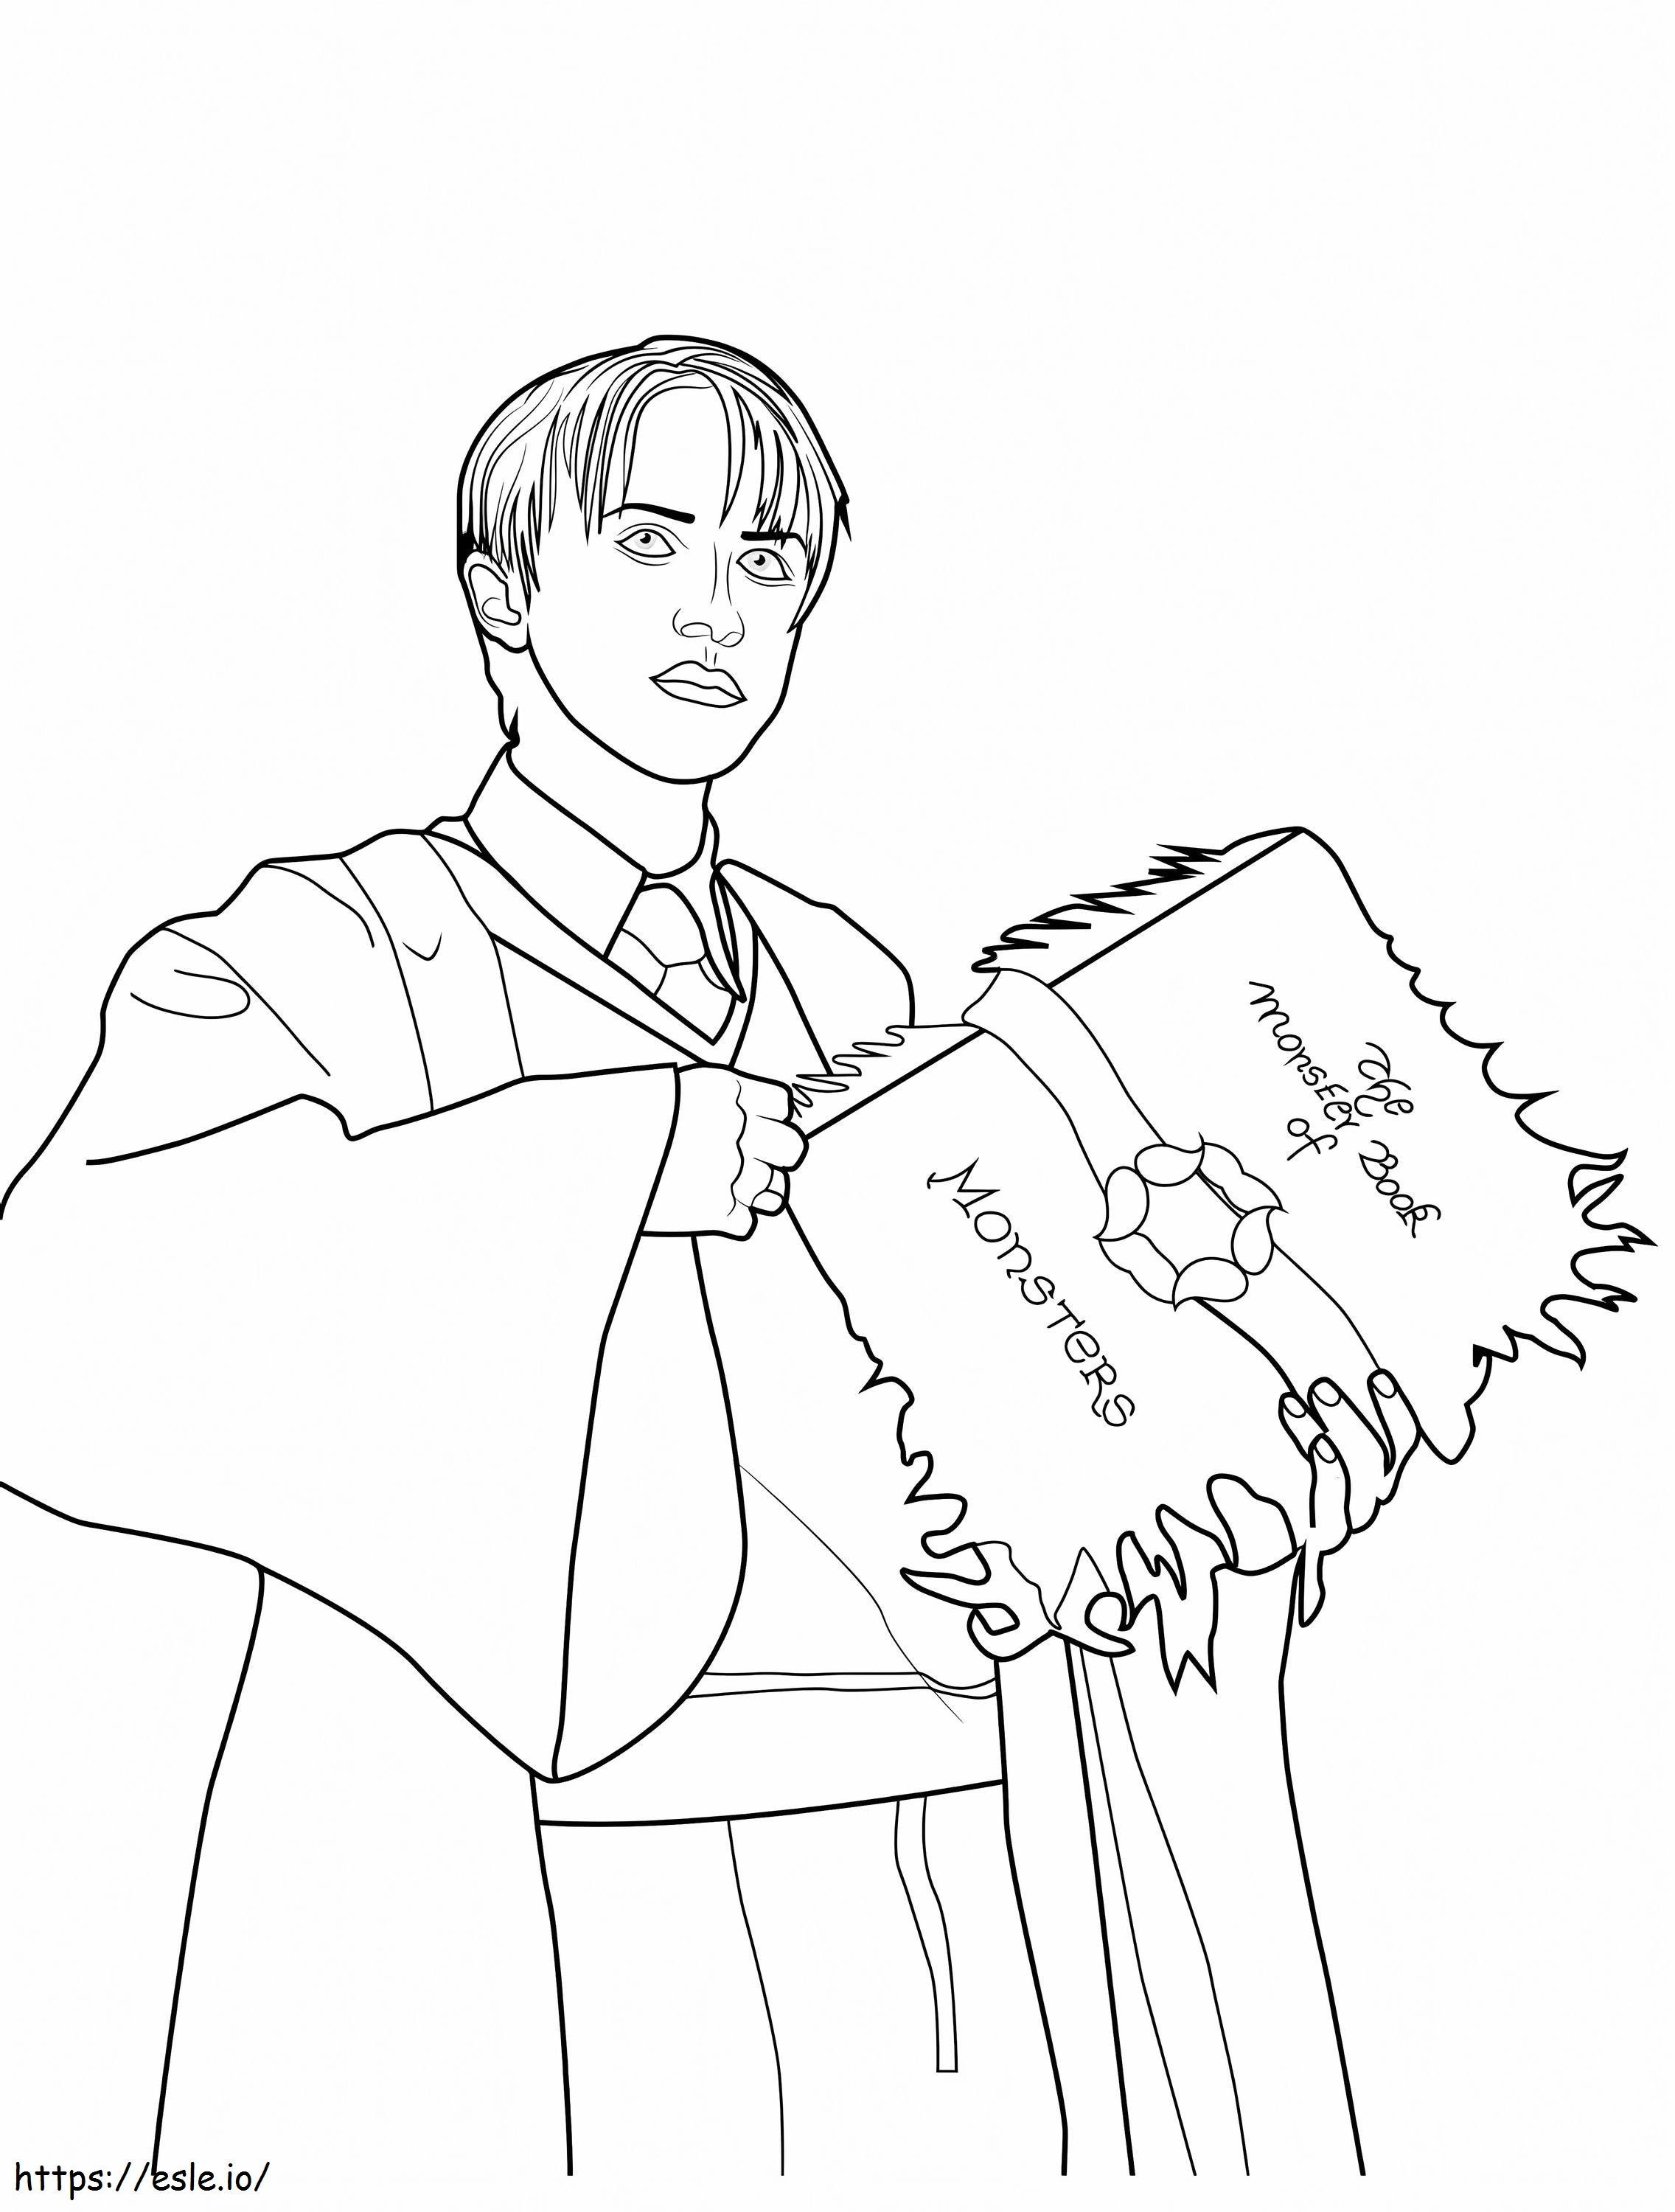 Draco Malfoy ținând în mână o carte de colorat